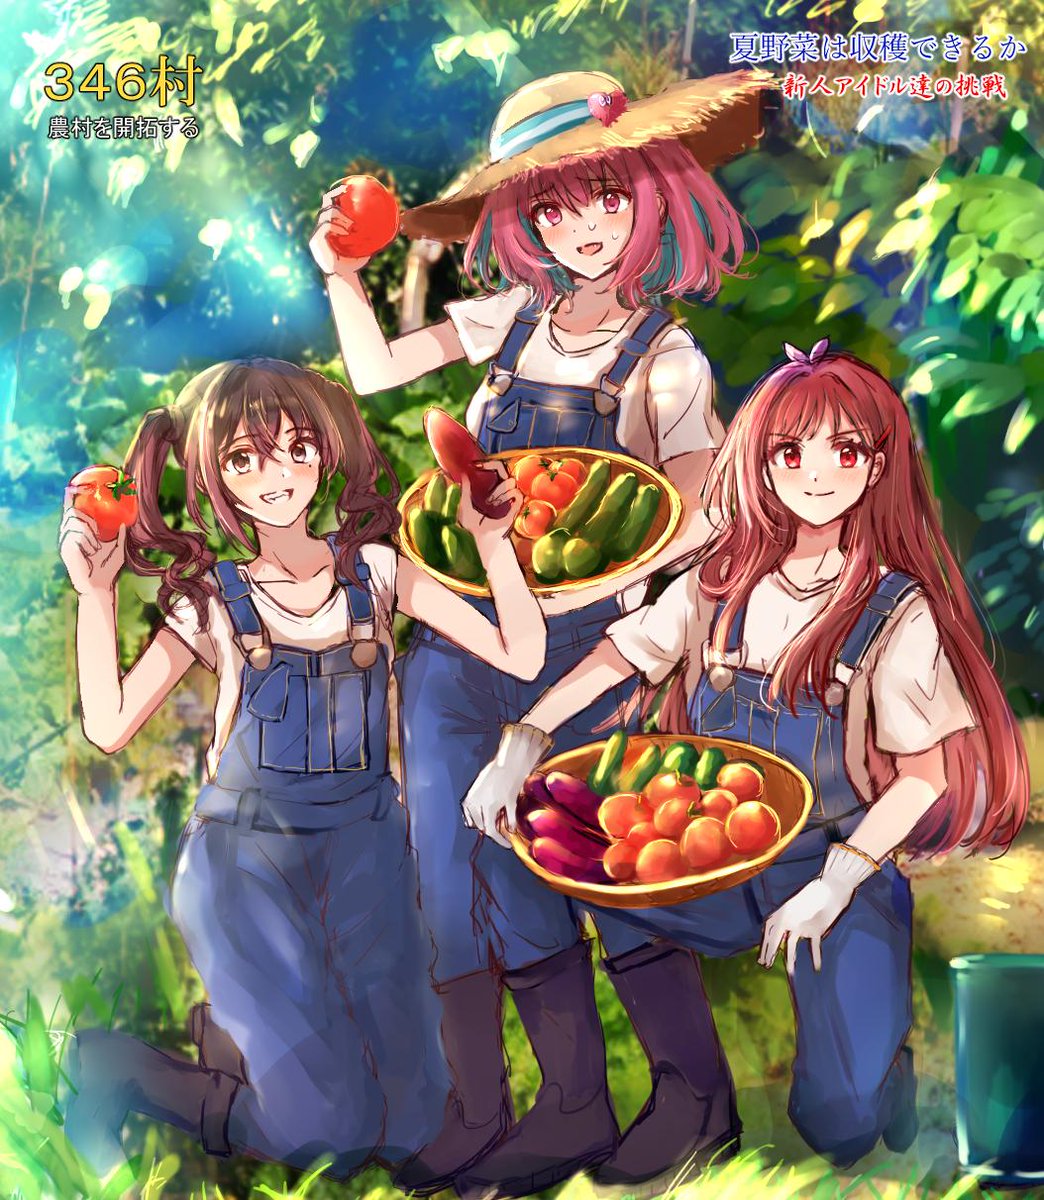 sunazuka akira ,yumemi riamu tomato multiple girls straw hat hat overalls 3girls food  illustration images